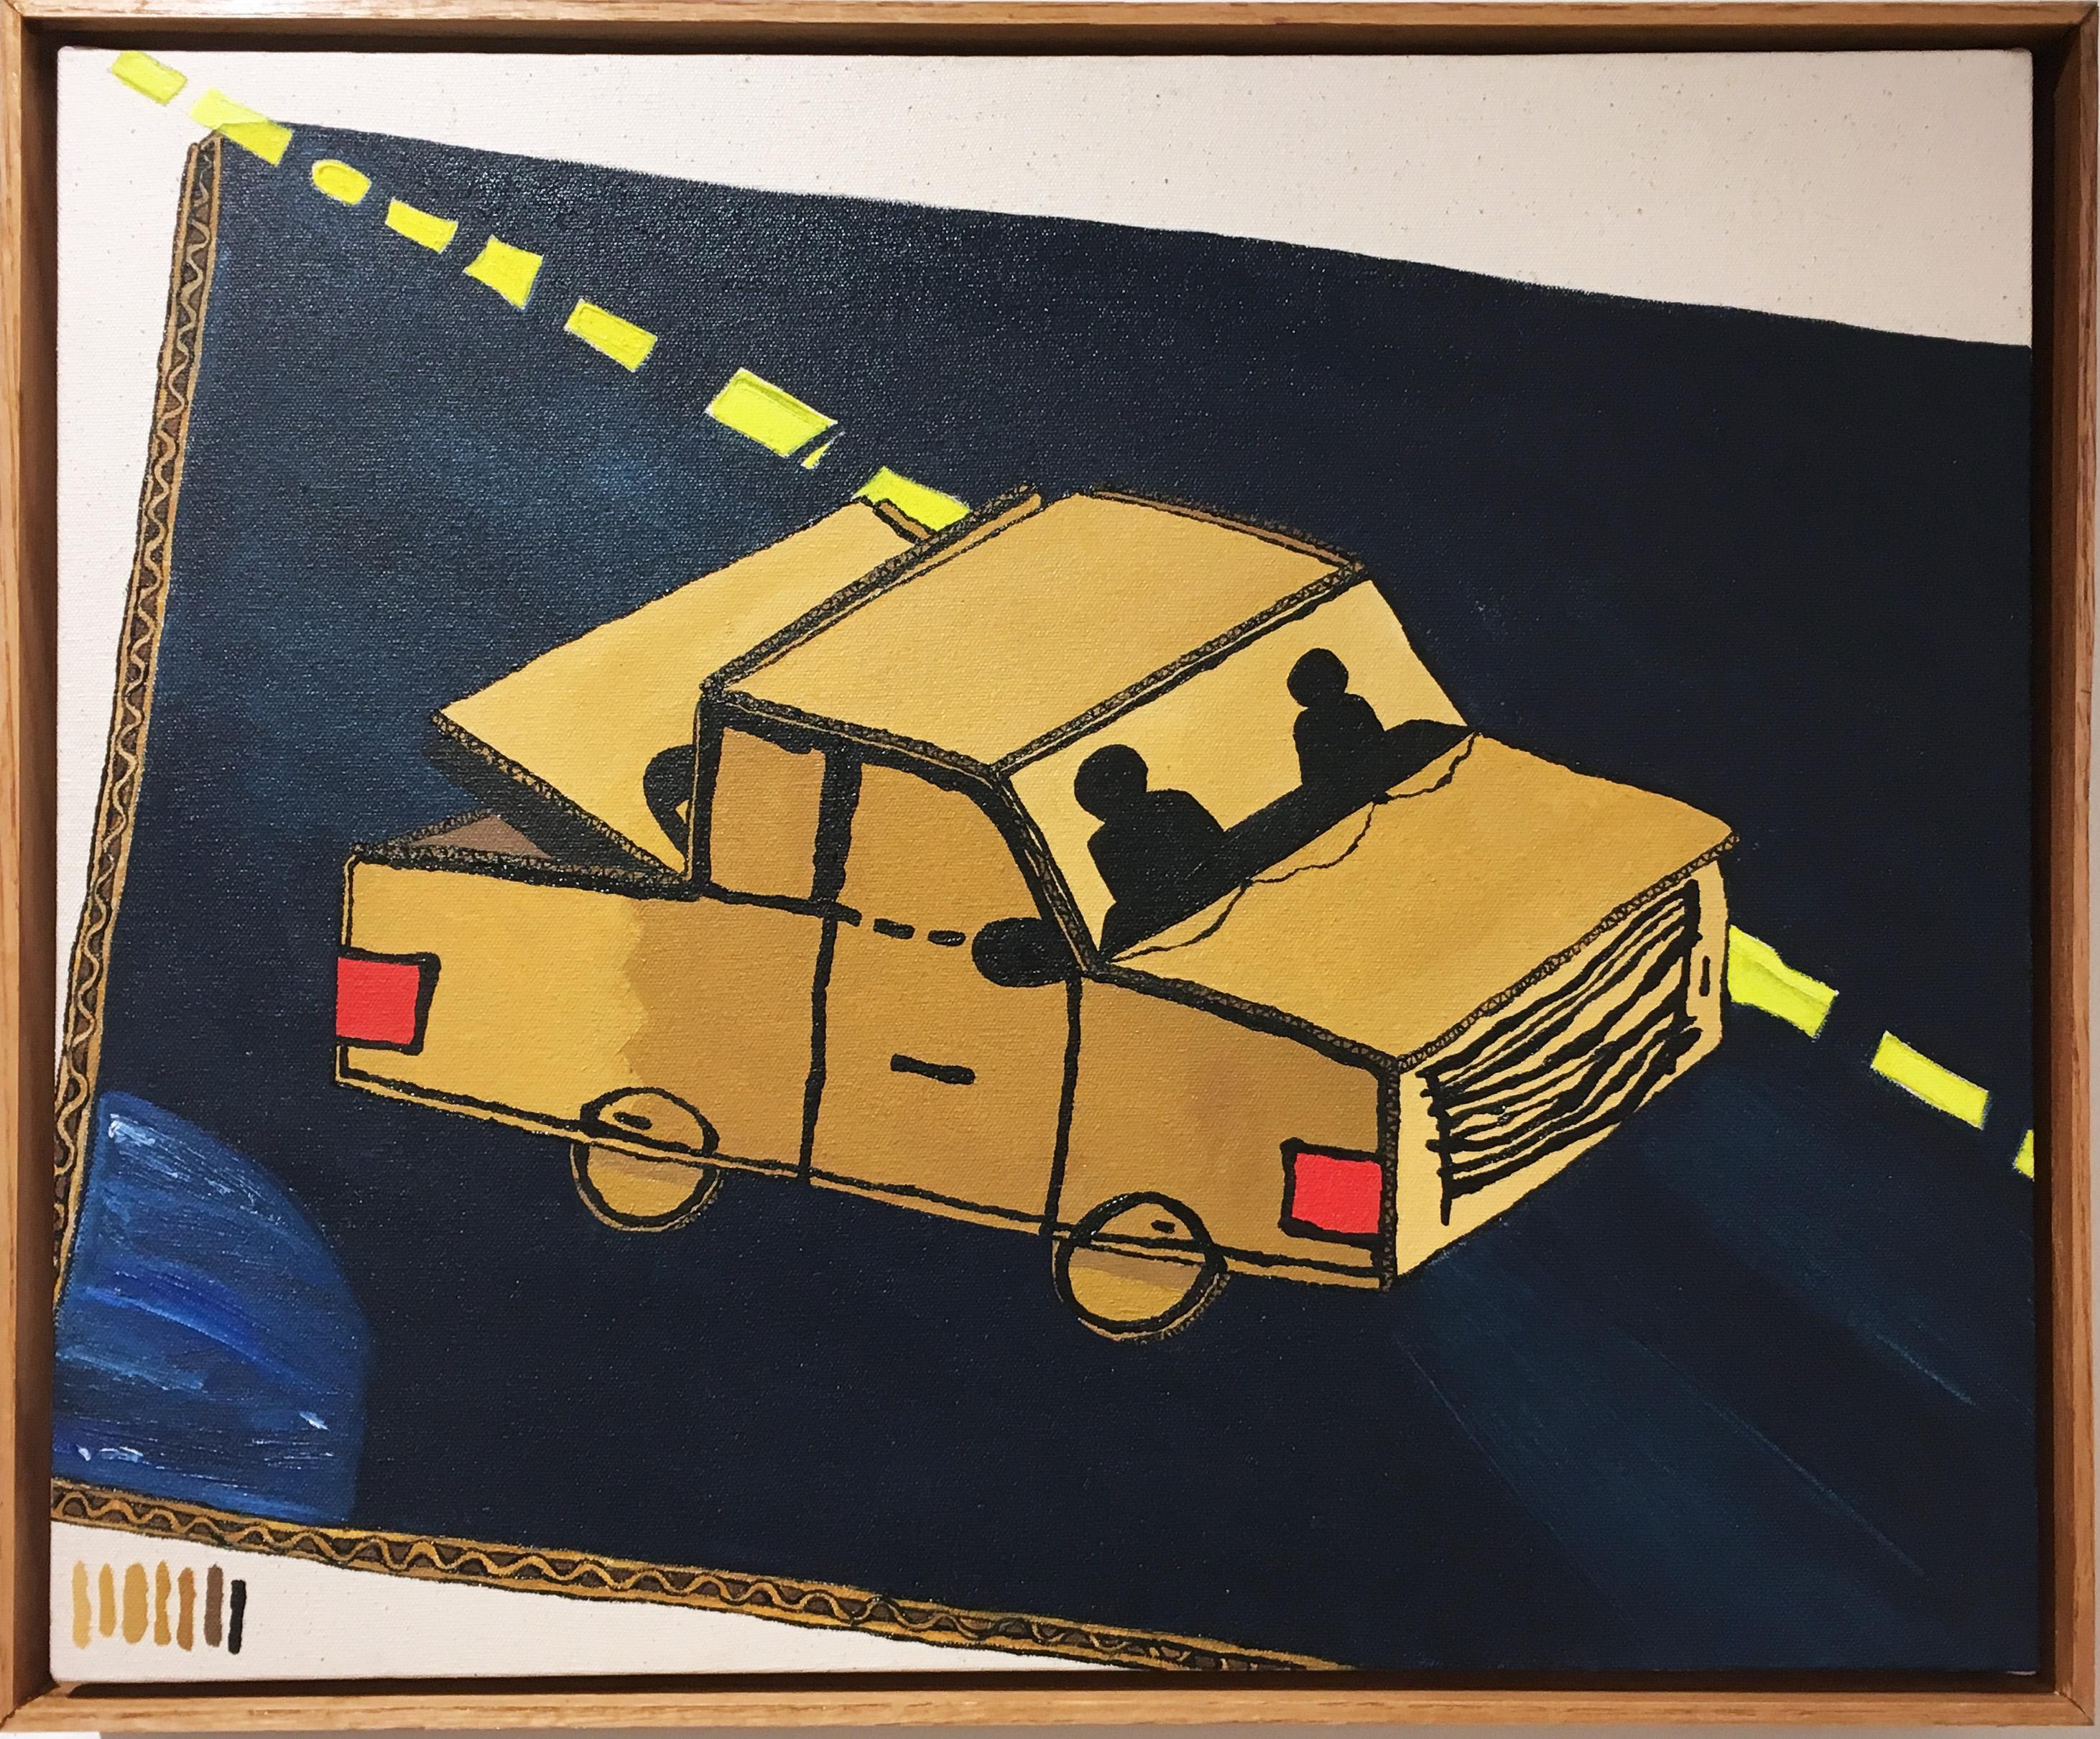 Max Vesuvius Budnick Figurative Painting – Road Trip, 2020, Ölfarbe, figurativ, Lkw, blau, weiß, gelb, beige, braun